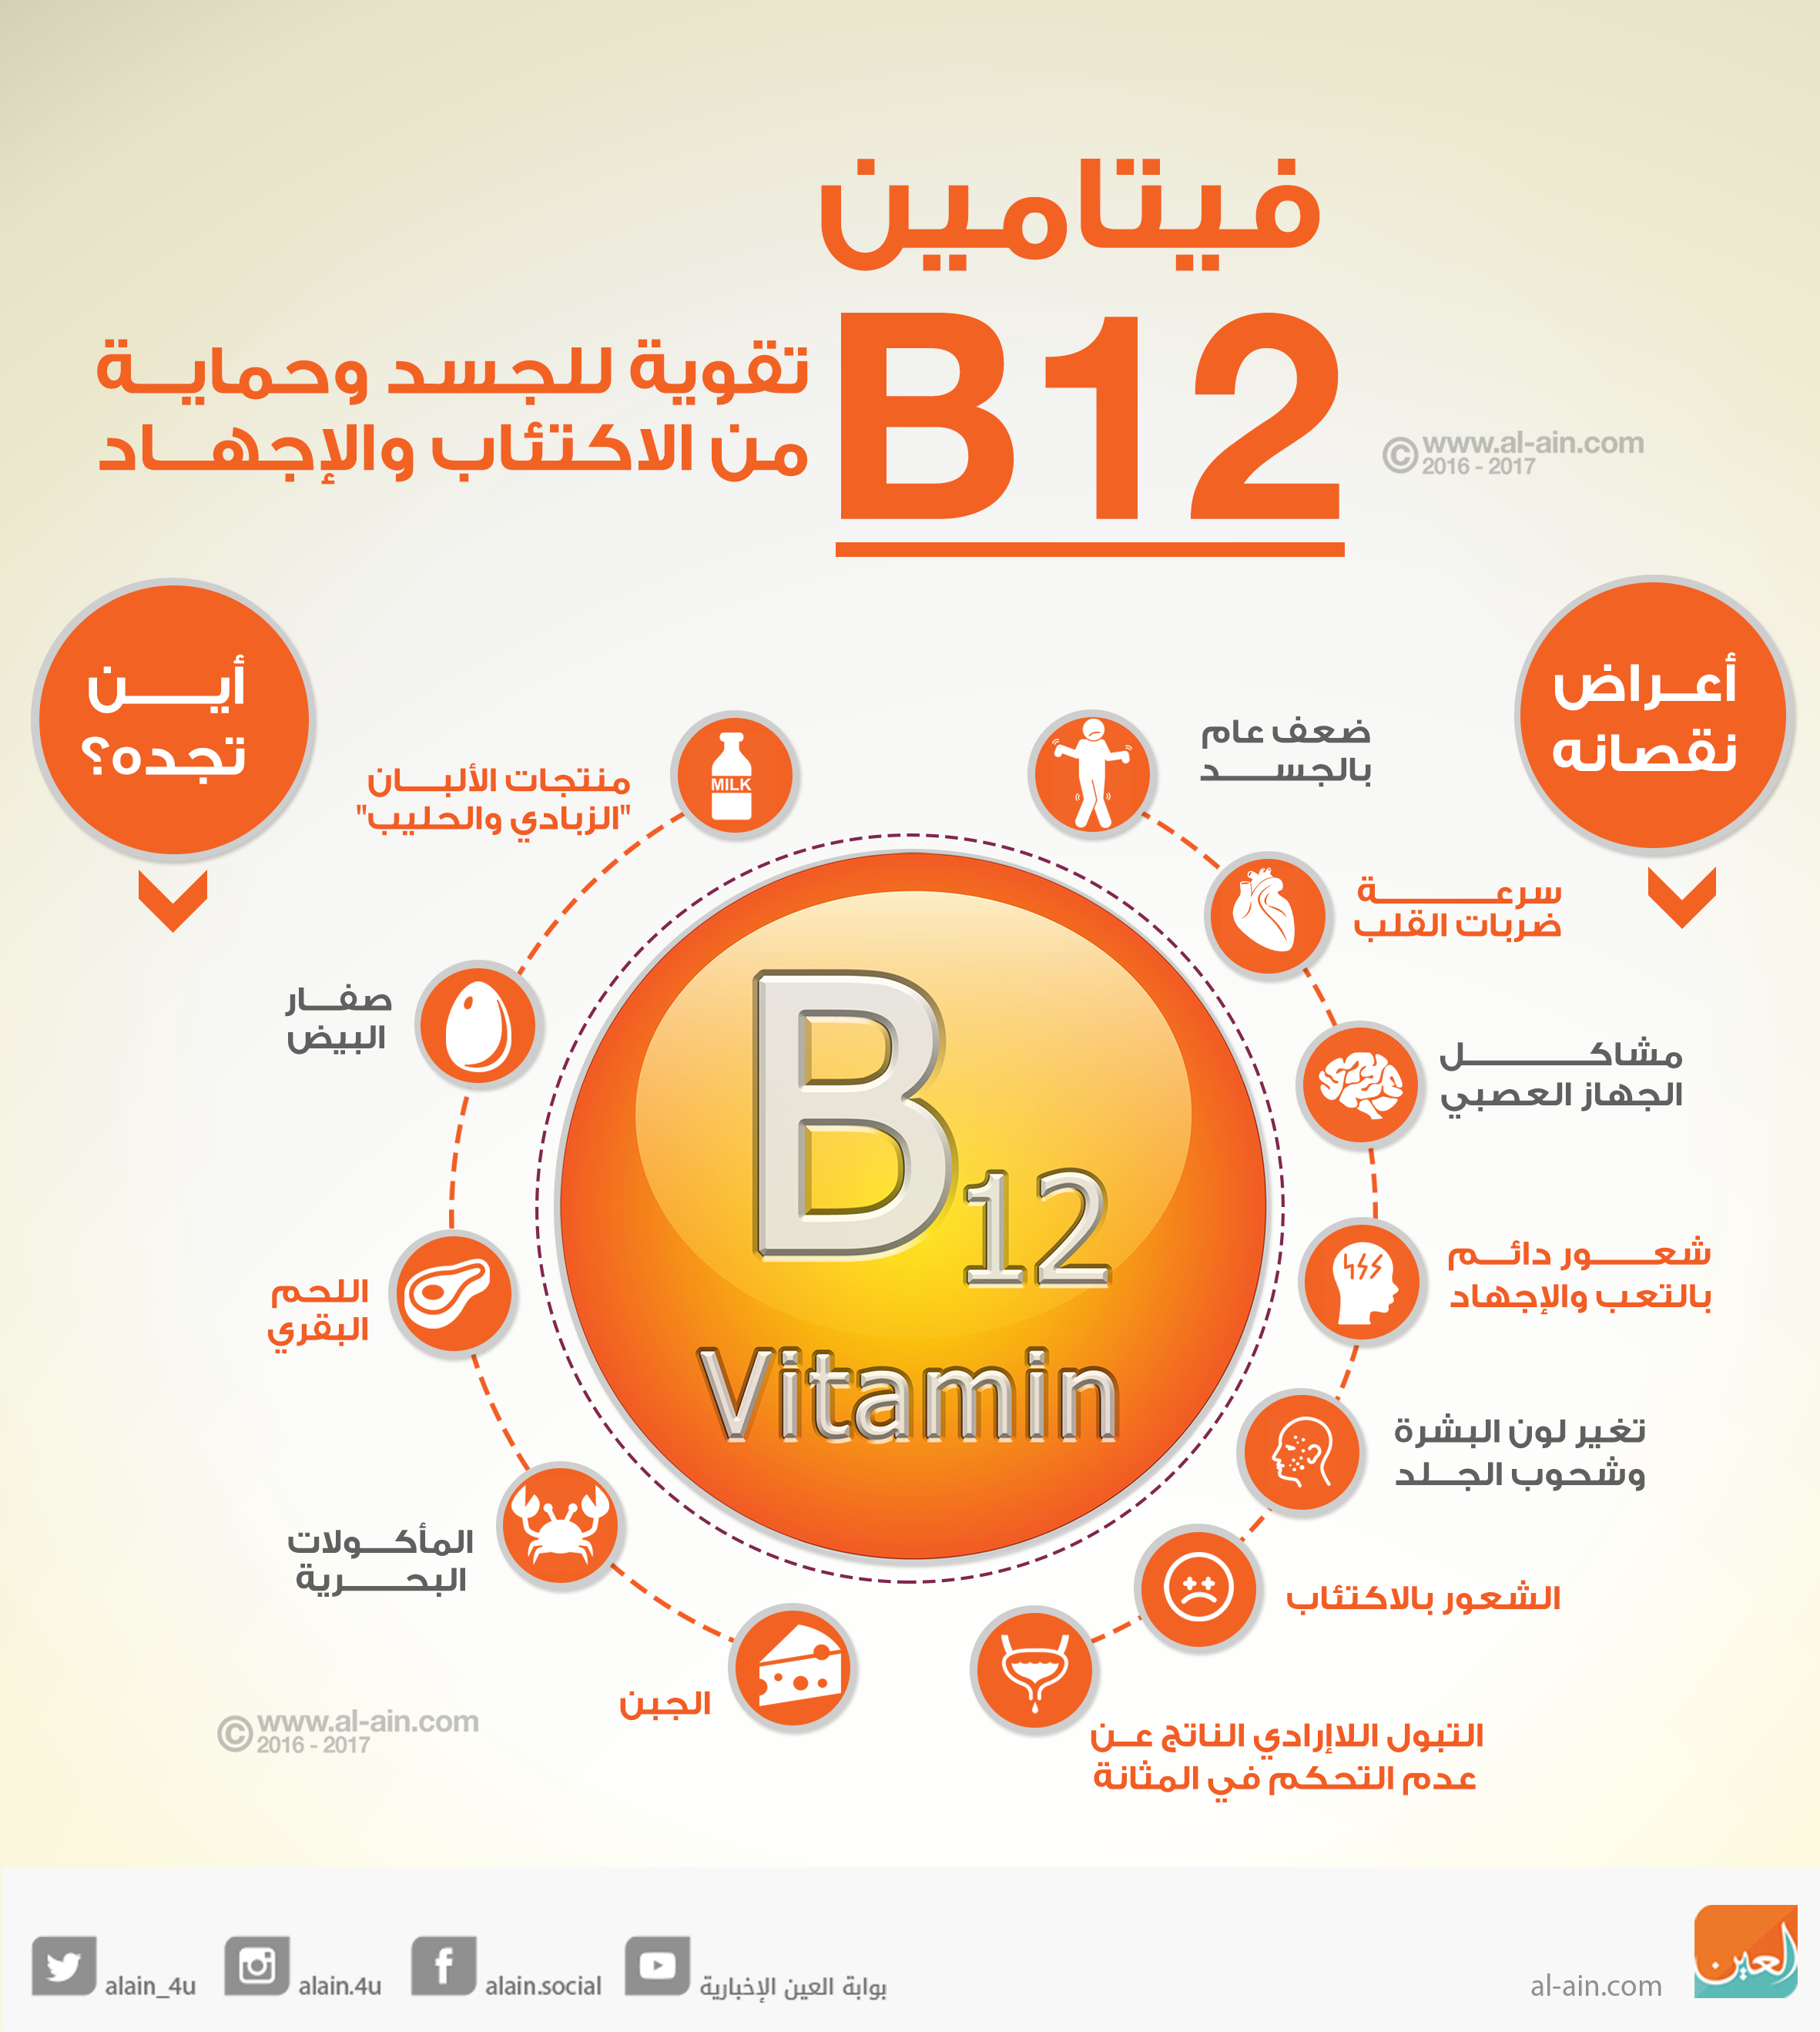 فيتامين b12 , فوائد واعراض نقص فيتامين b12 صباحيات